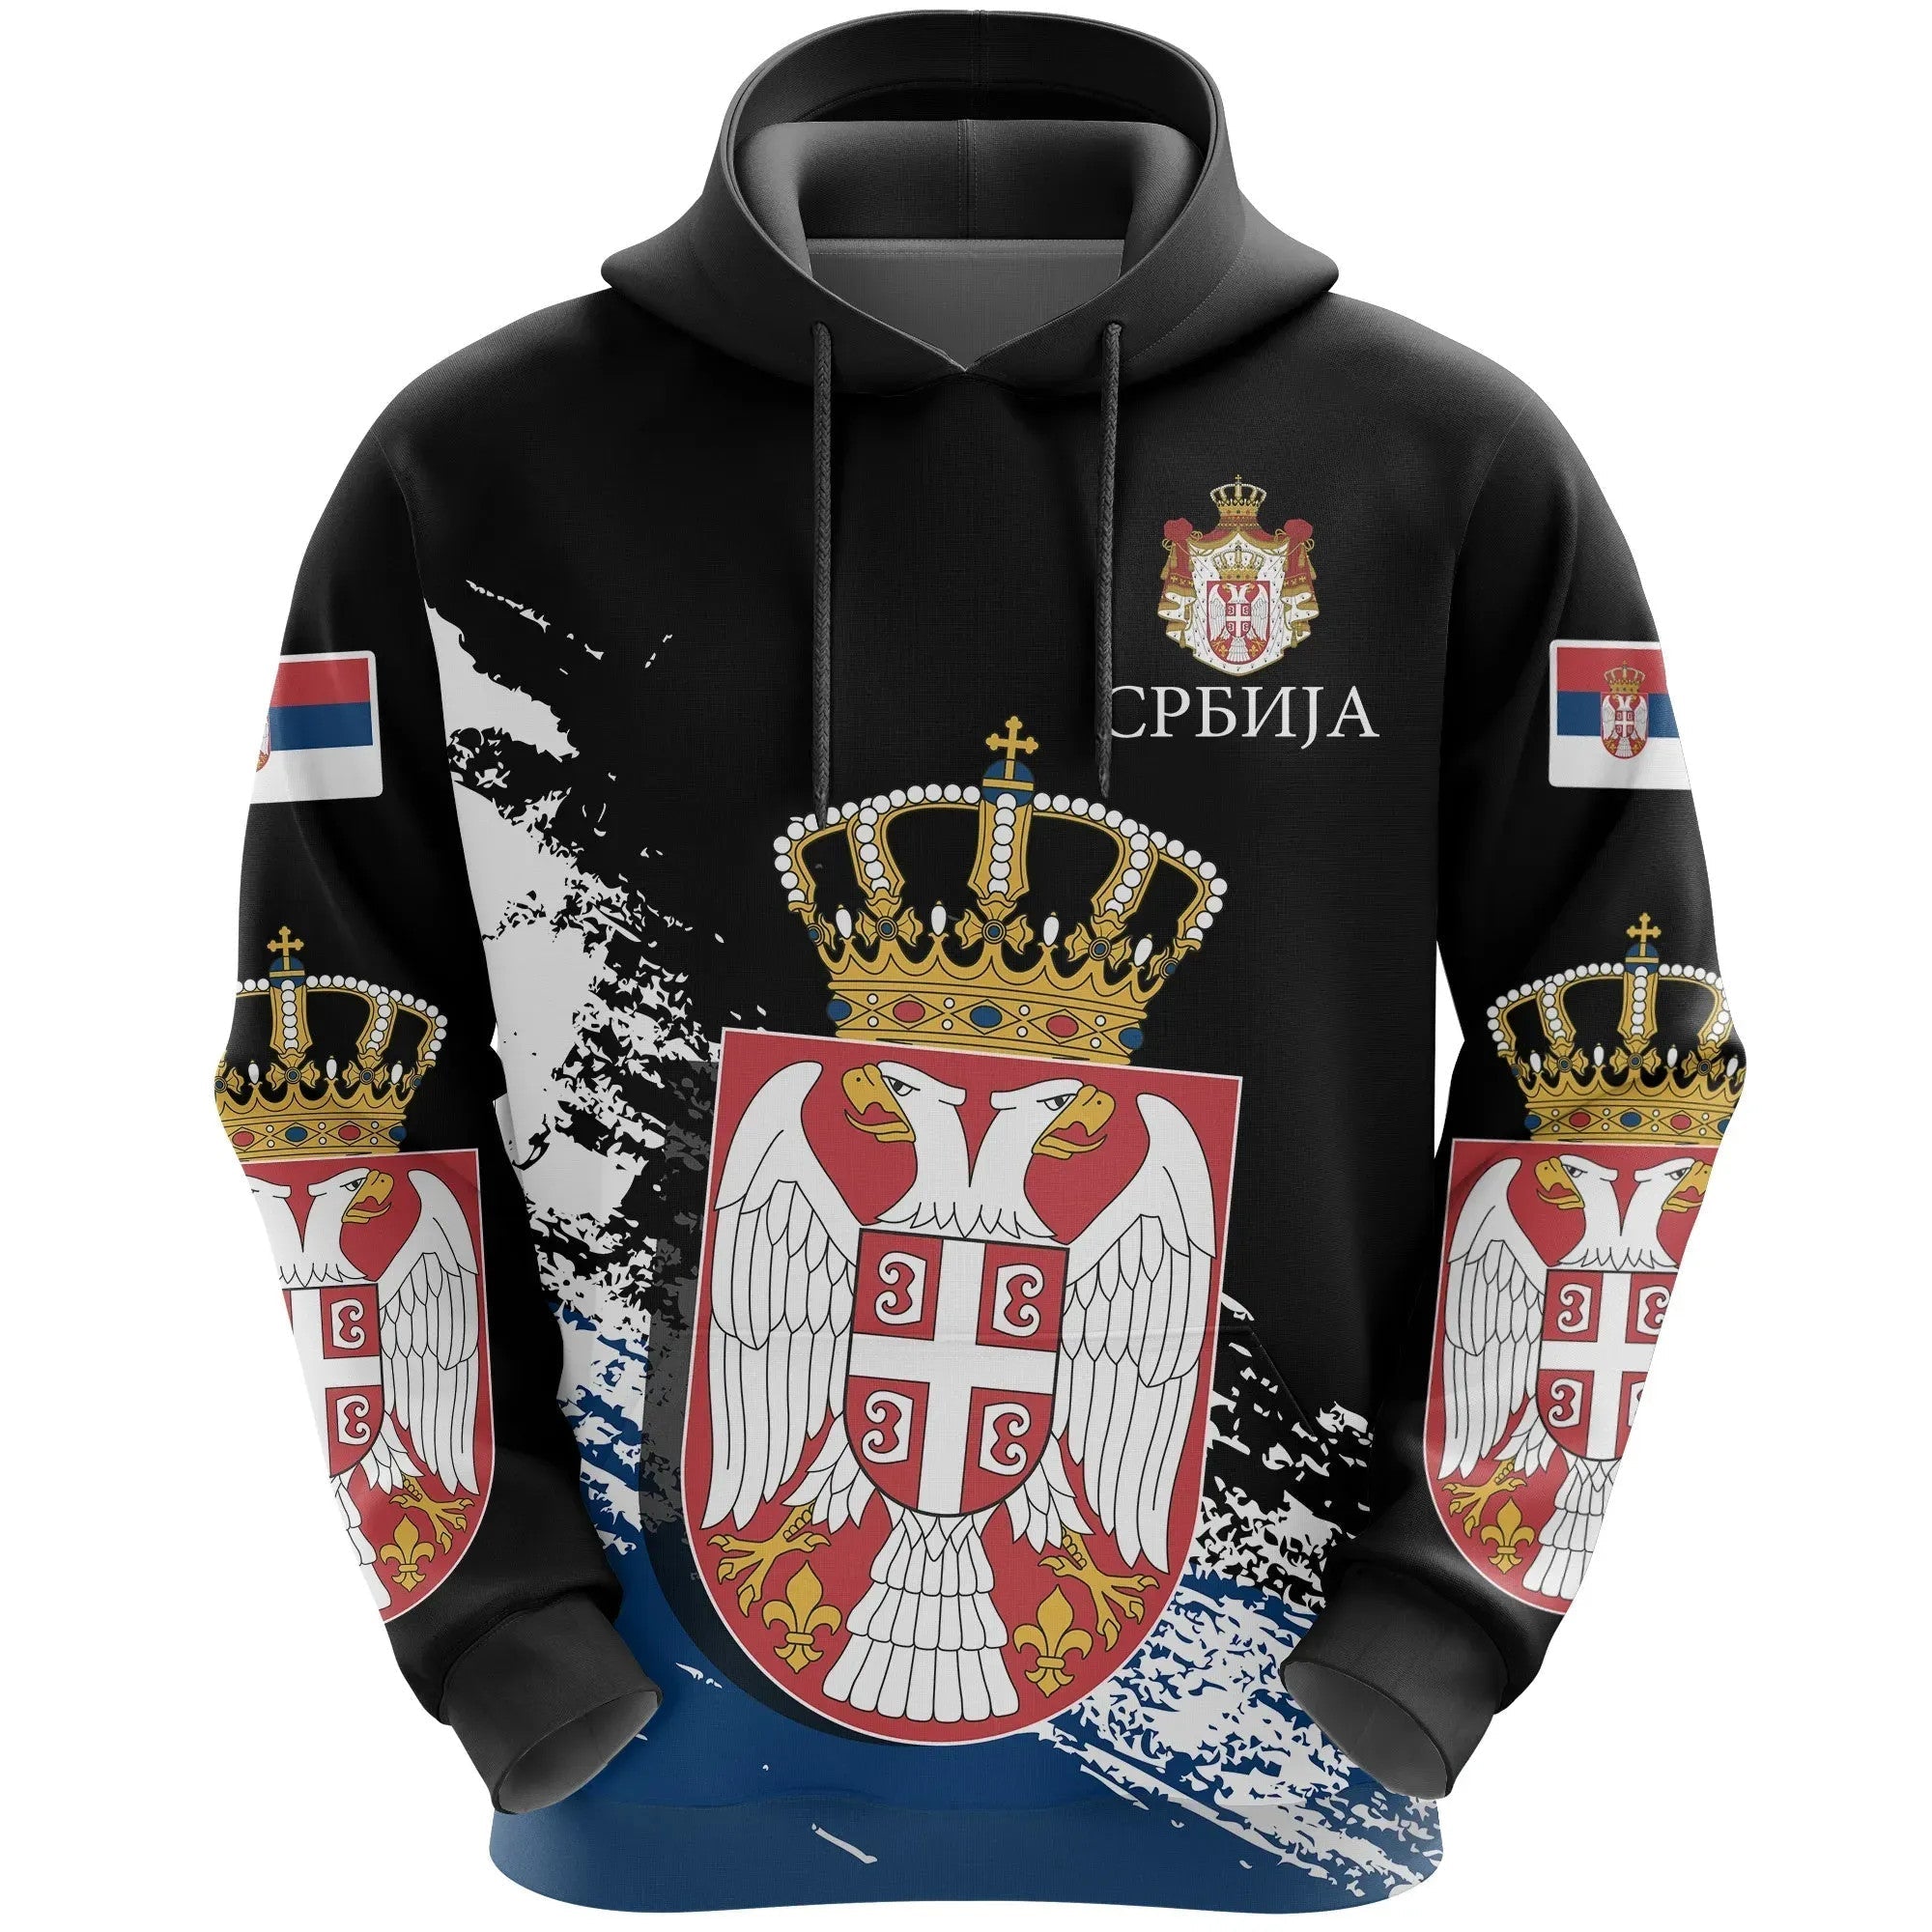 serbia-special-hoodie-black-version